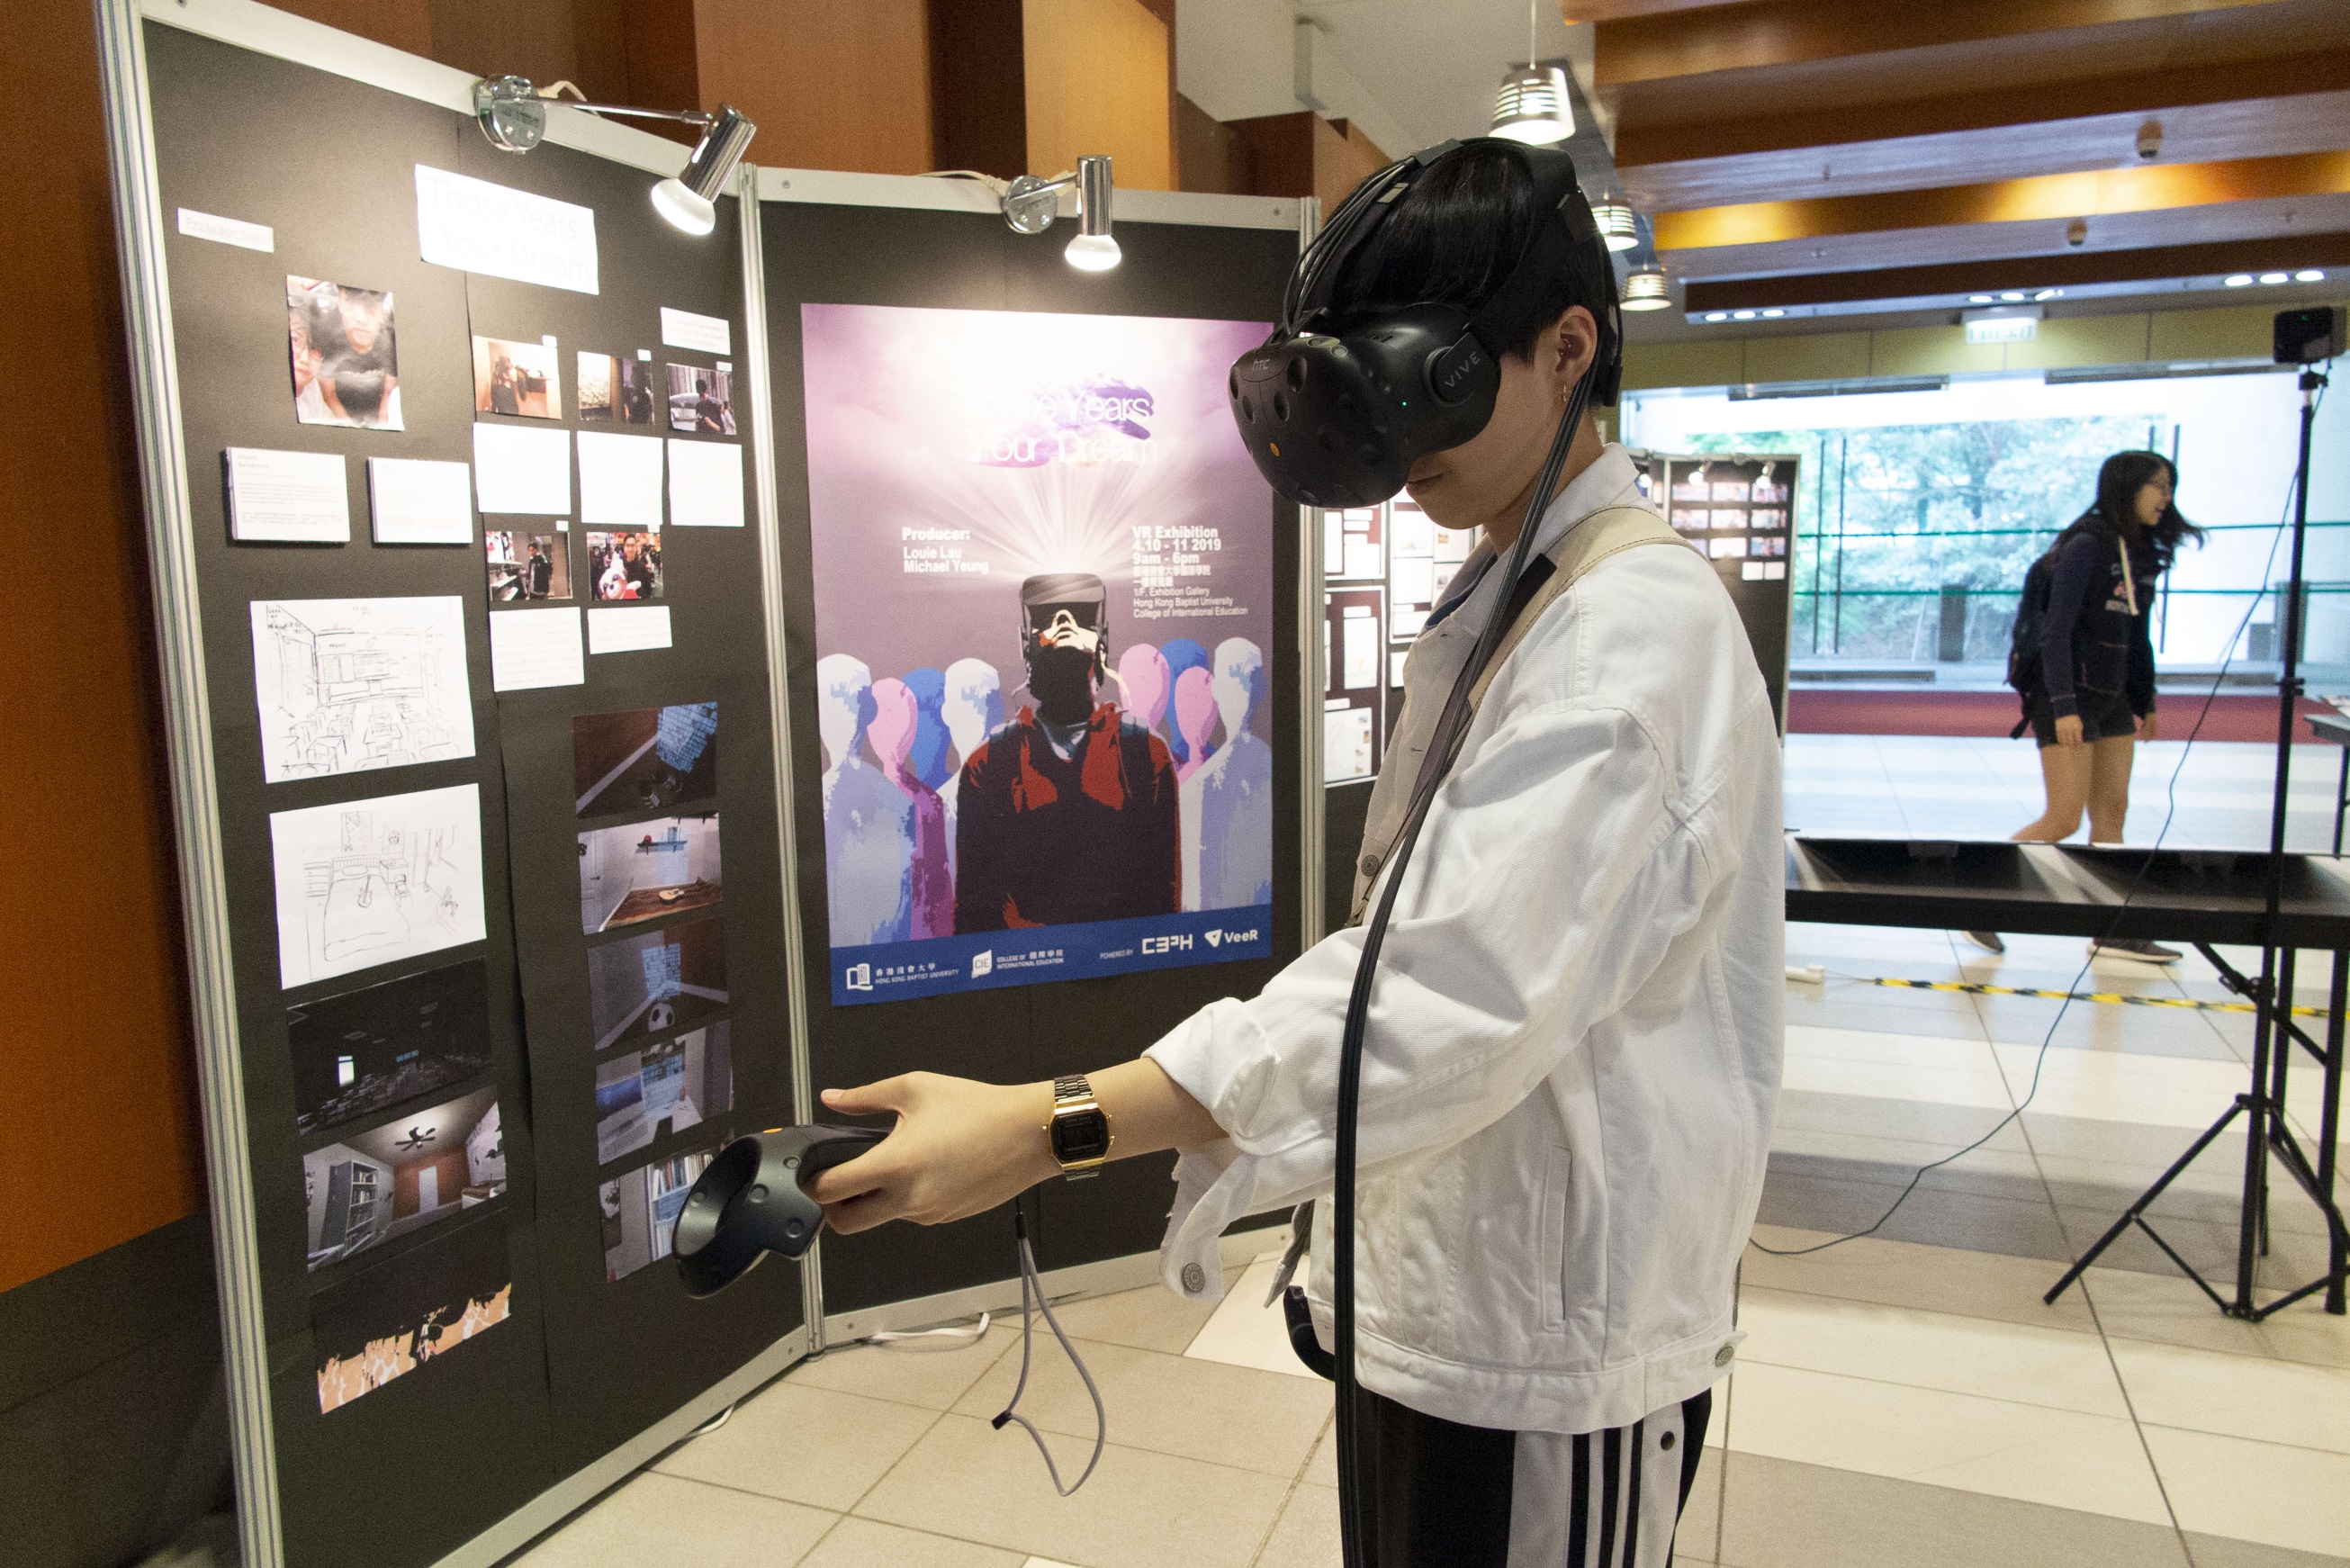 崭新的虚拟现实（VR）作品「Those Years Your Dream」希望鼓励高中同学建立正确的人生价值观，及保持追寻梦想的勇气。